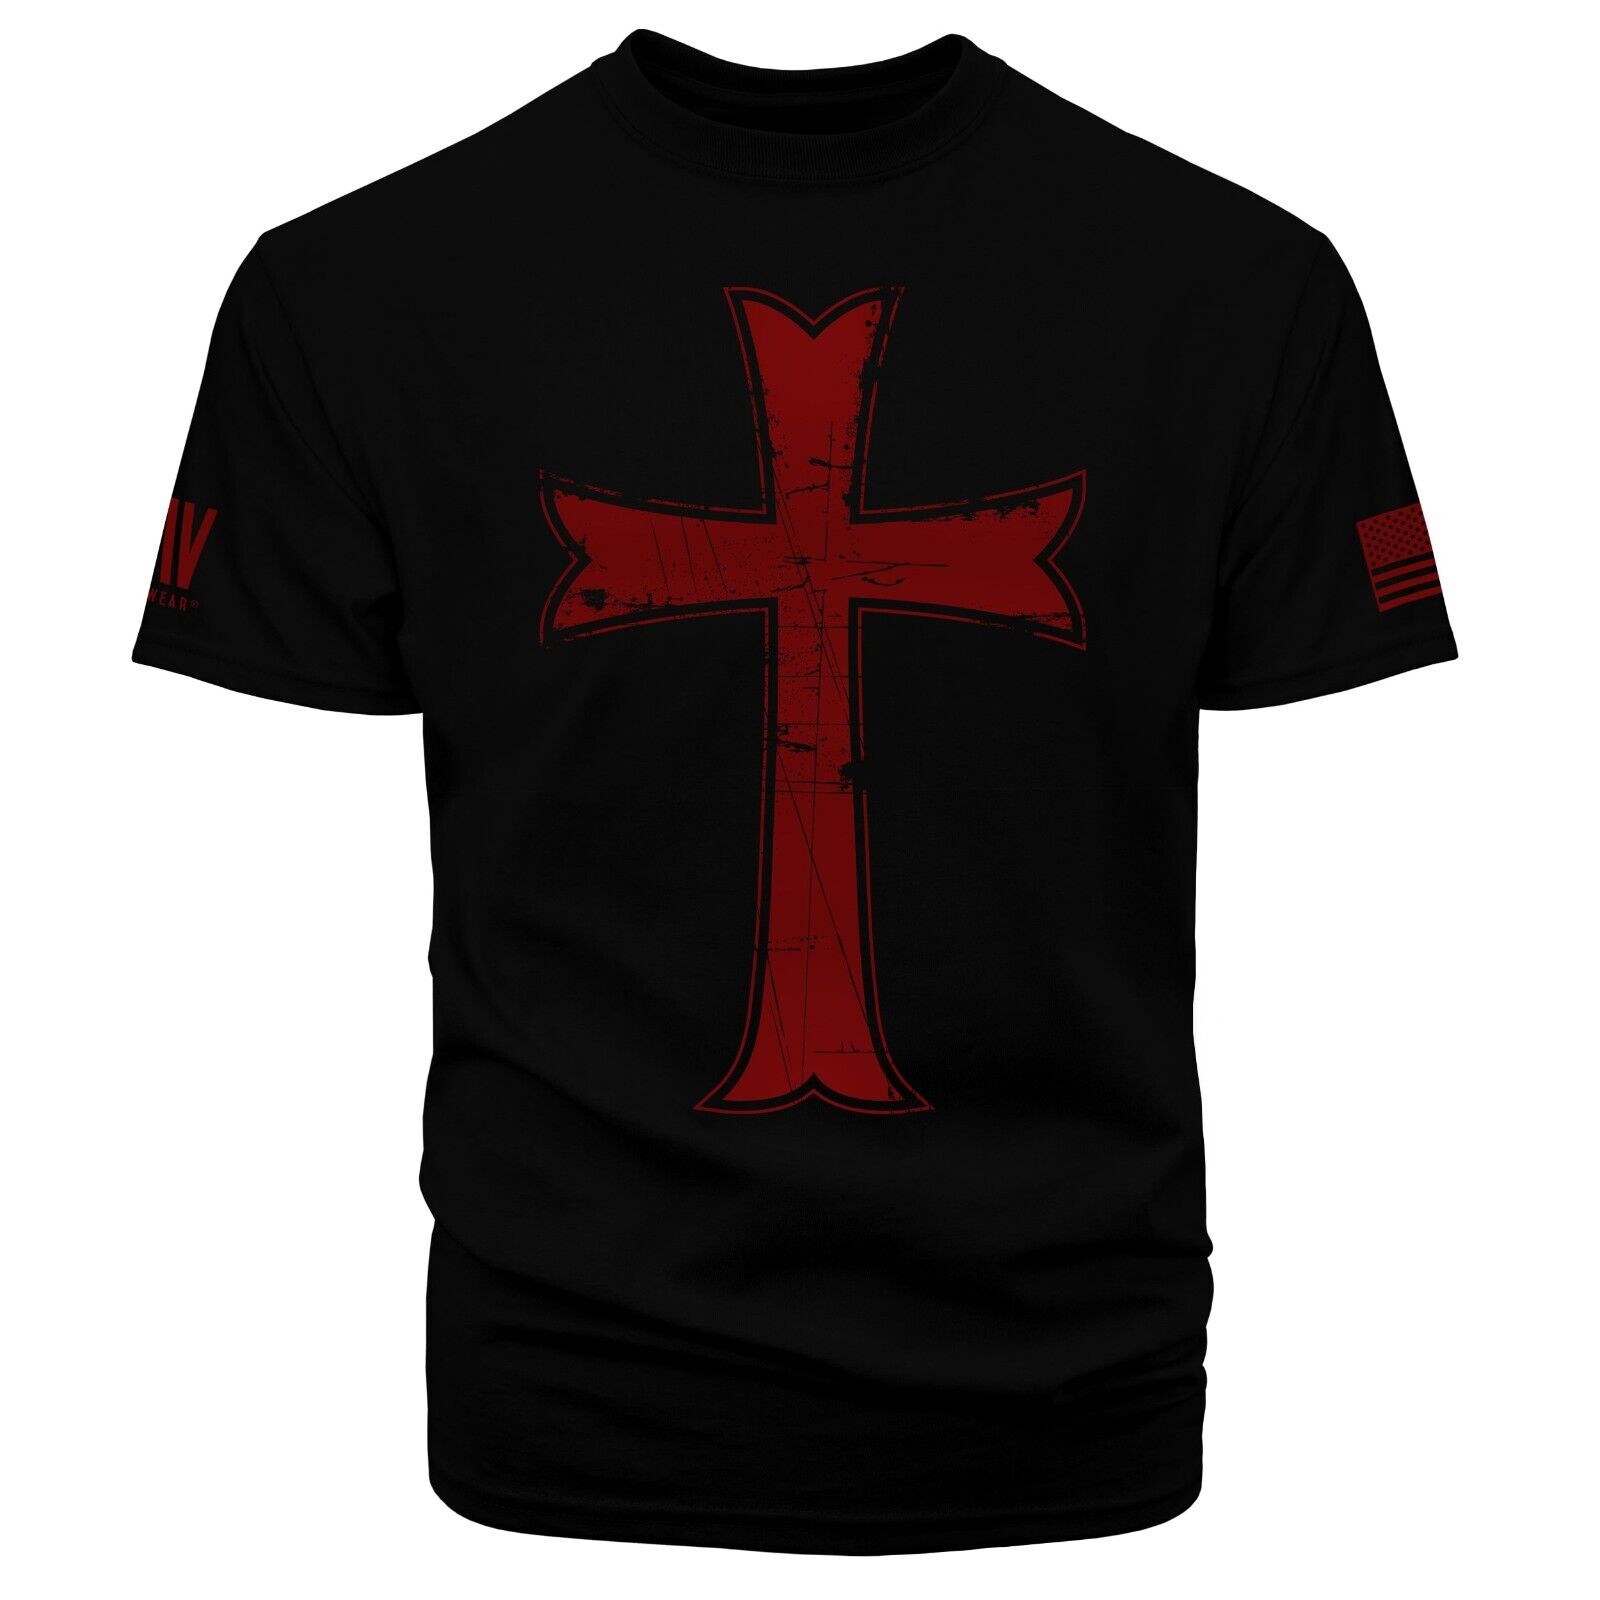 Crusader Red Cross Knights Templar Jesus Christ Short Sleeve T-shirt